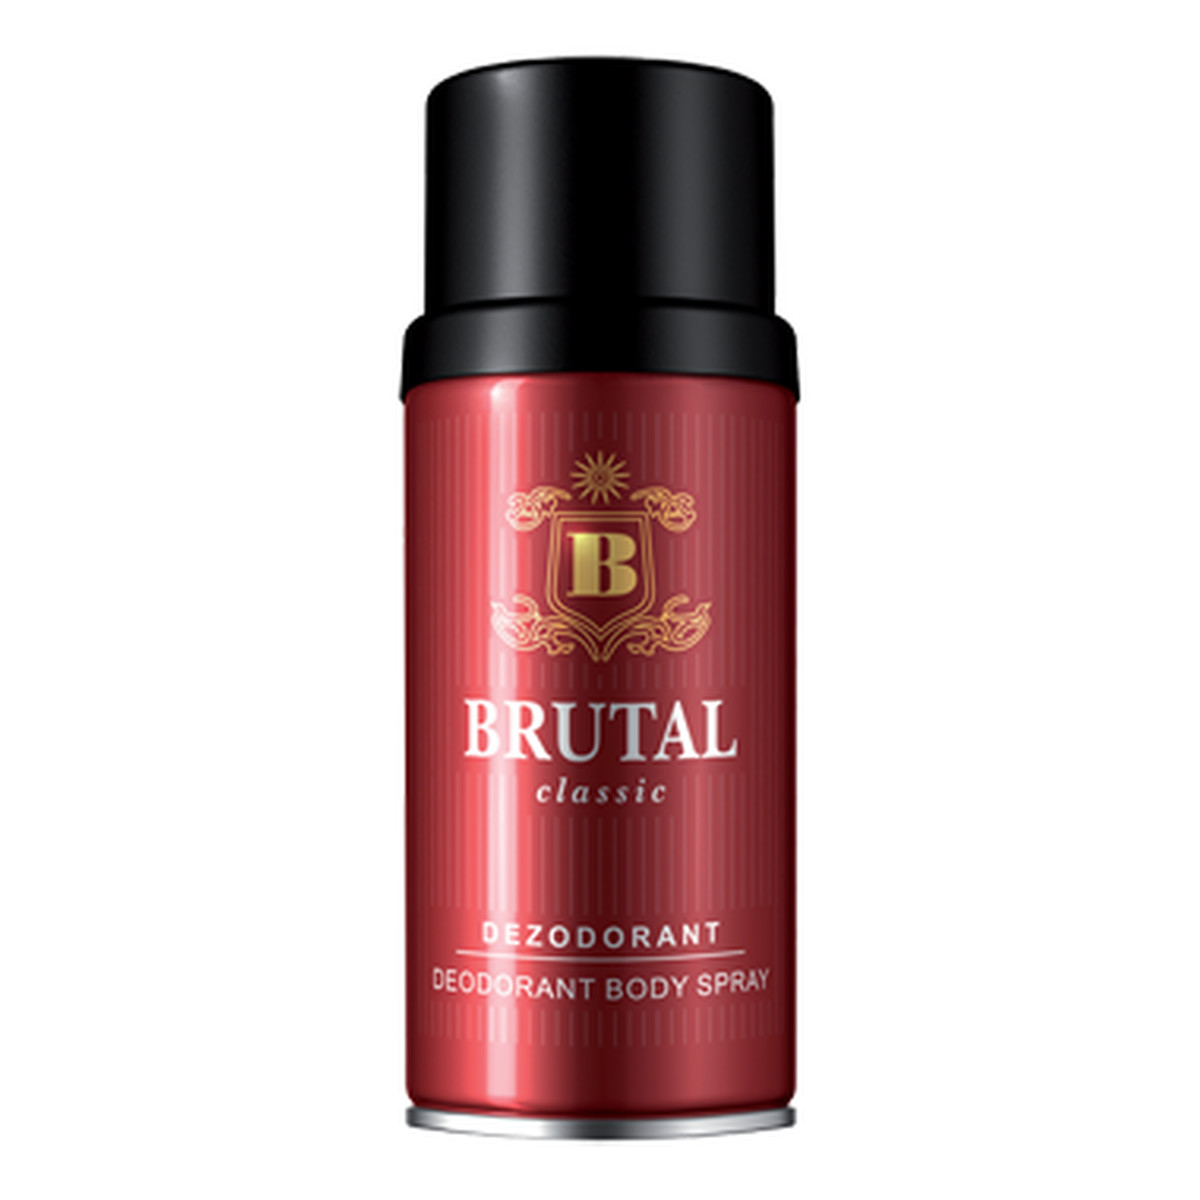 Brutal Classic Dezodorant Spray pęknięta zatyczka 150ml